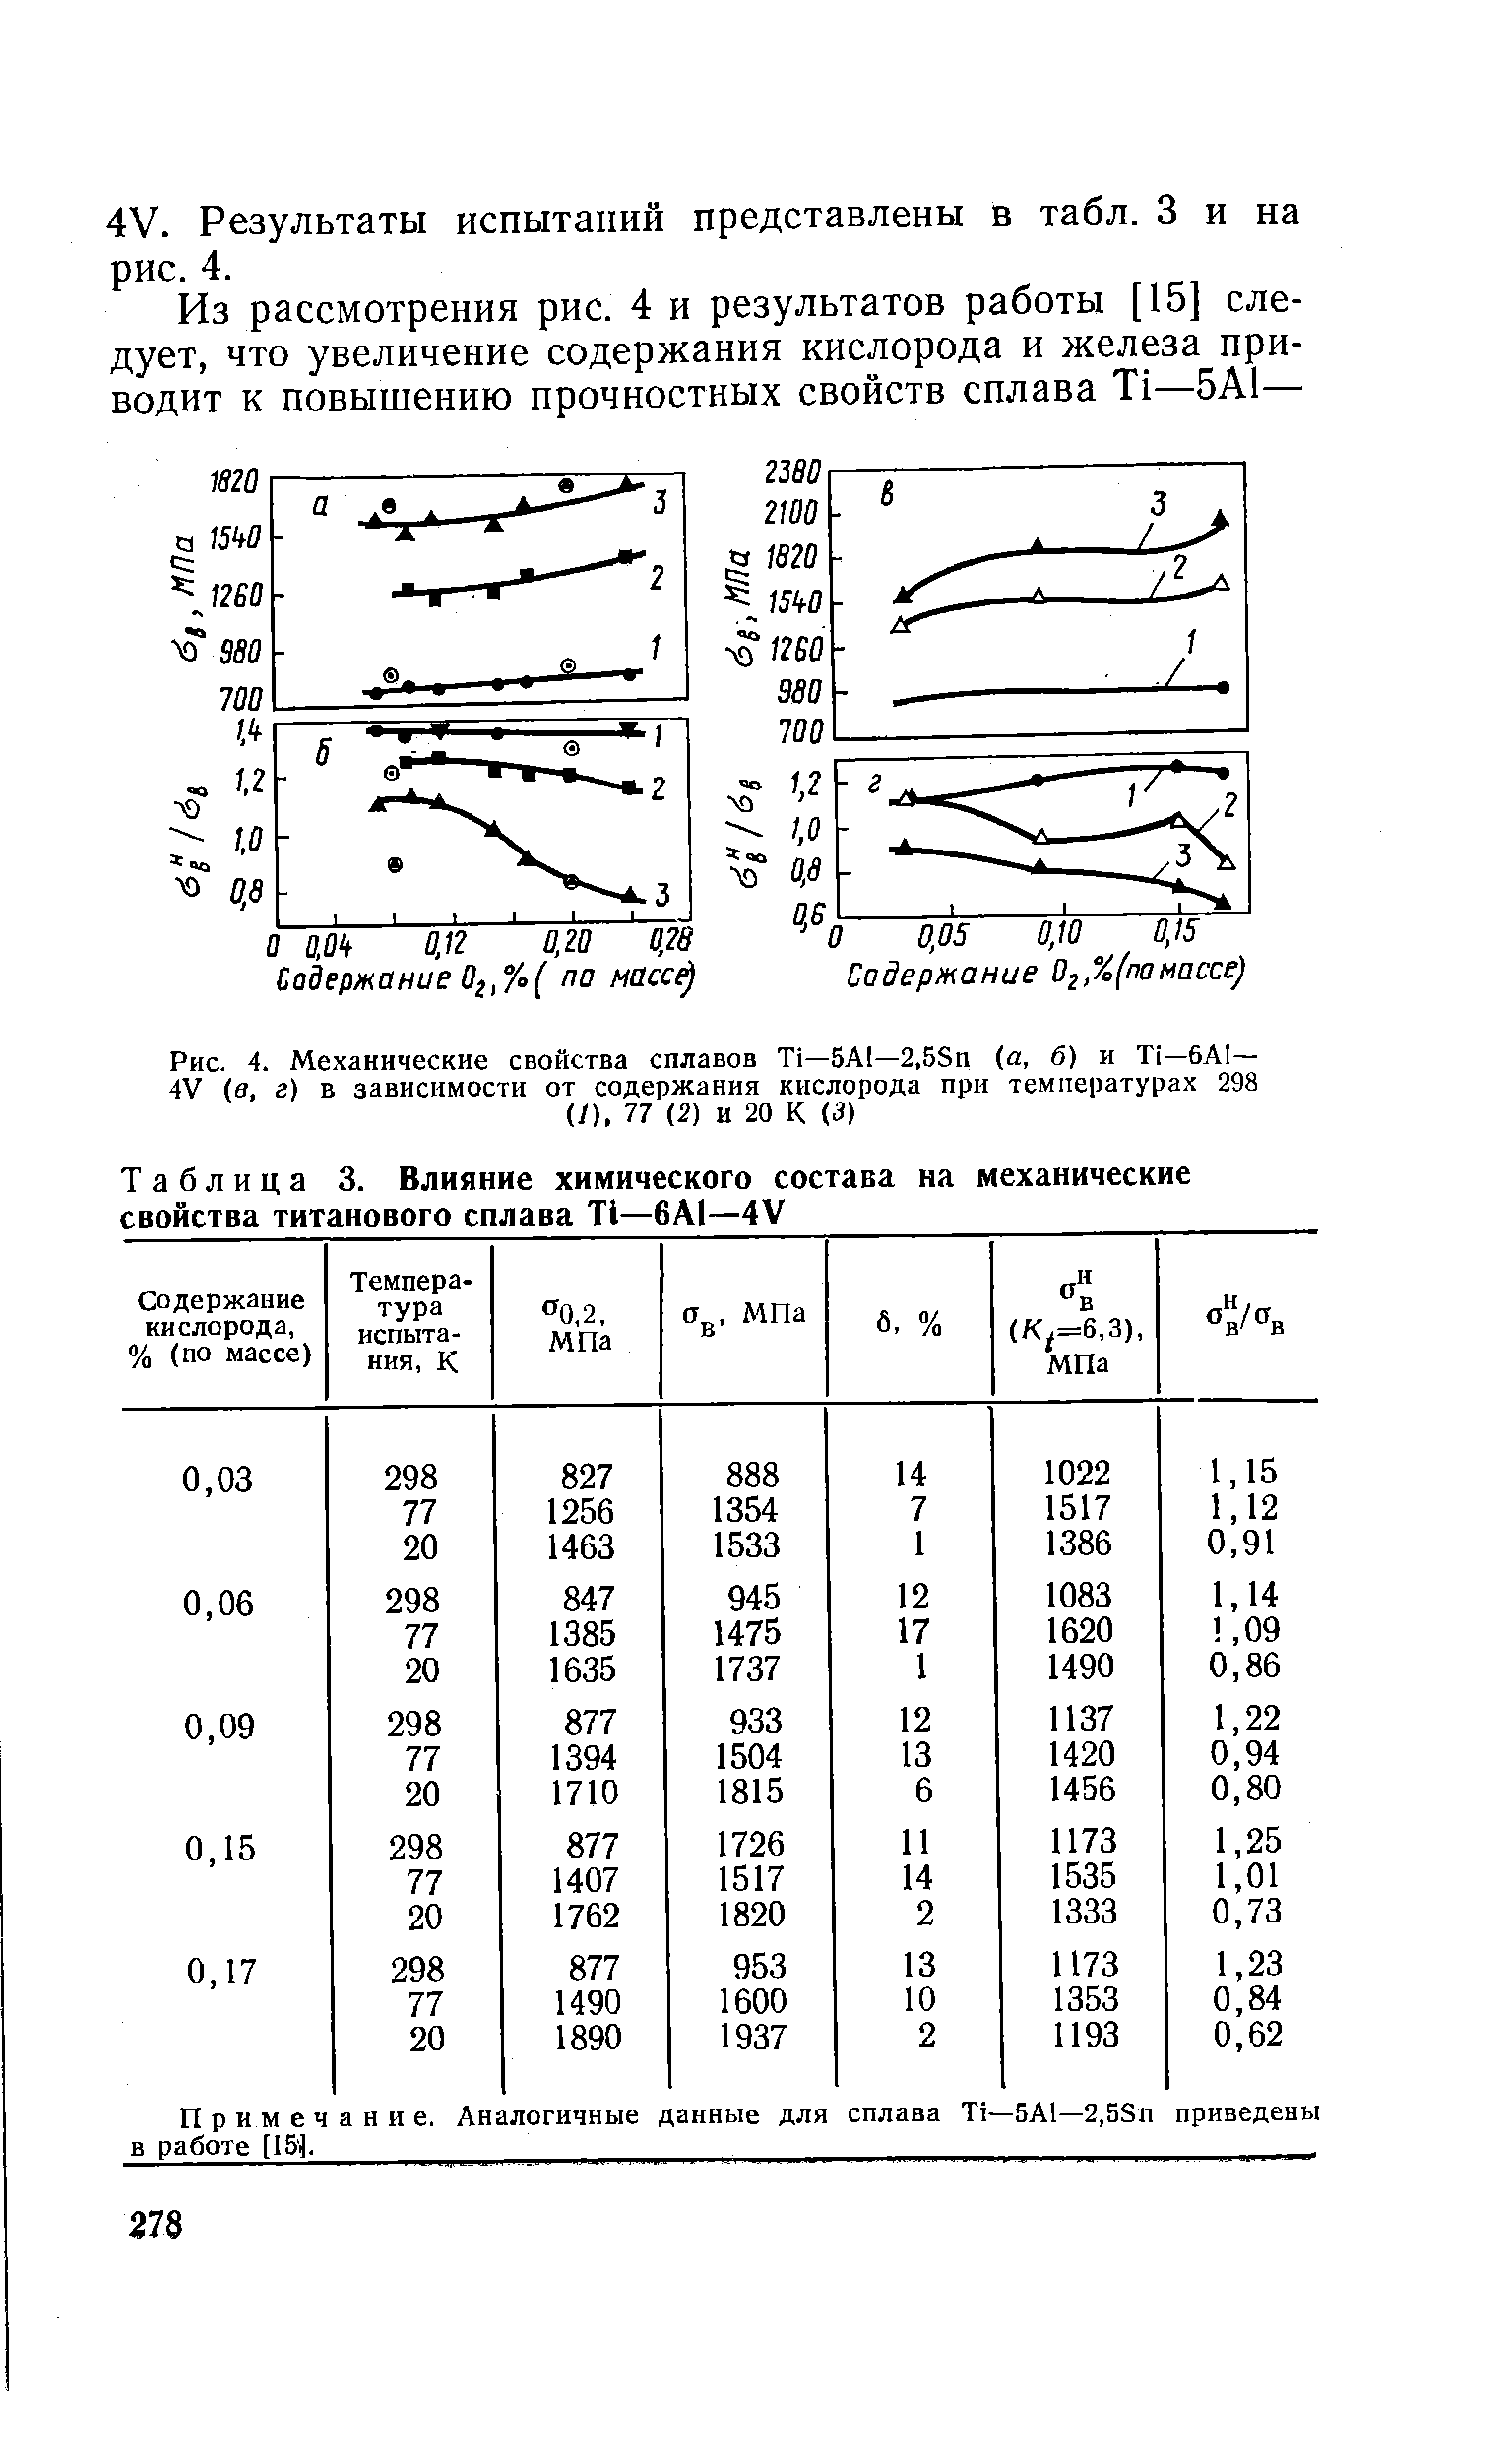 Таблица 3. Влияние химического состава на механические свойства титанового сплава Т1—6AI—4V
